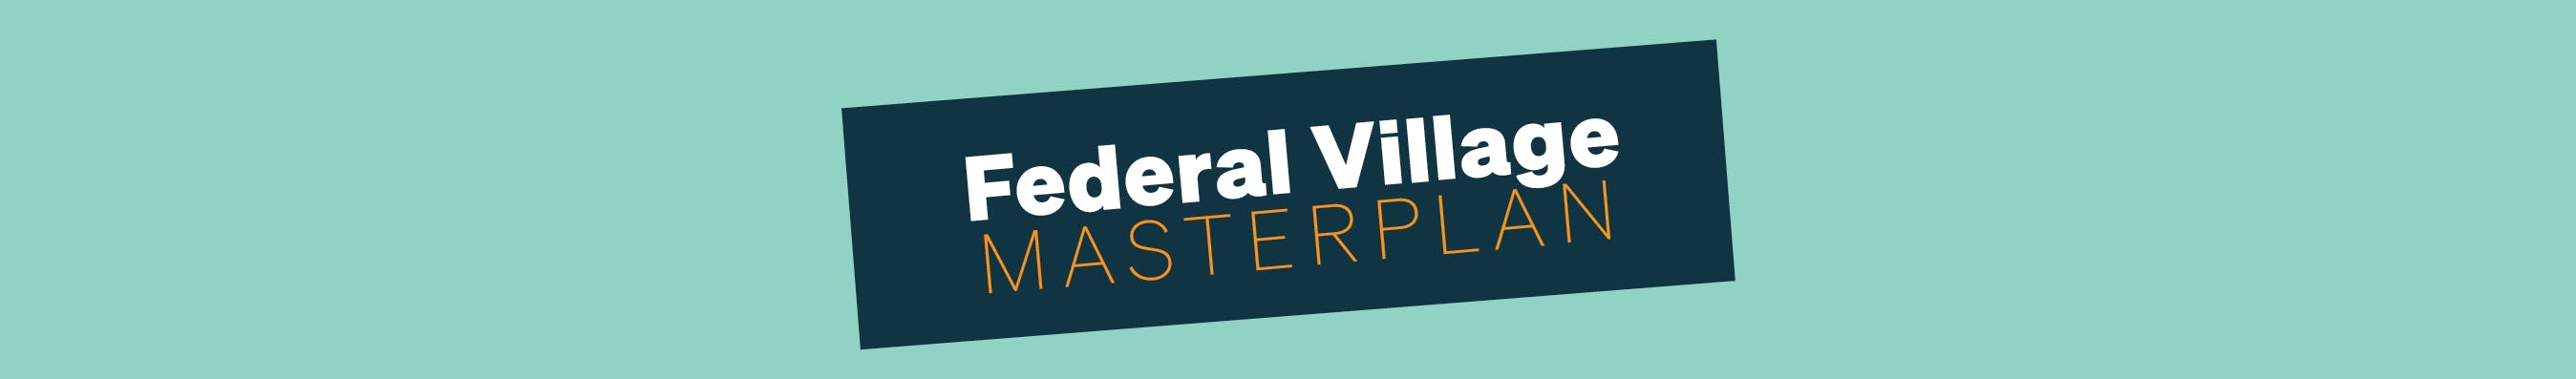 Federal Village Masterplan banner